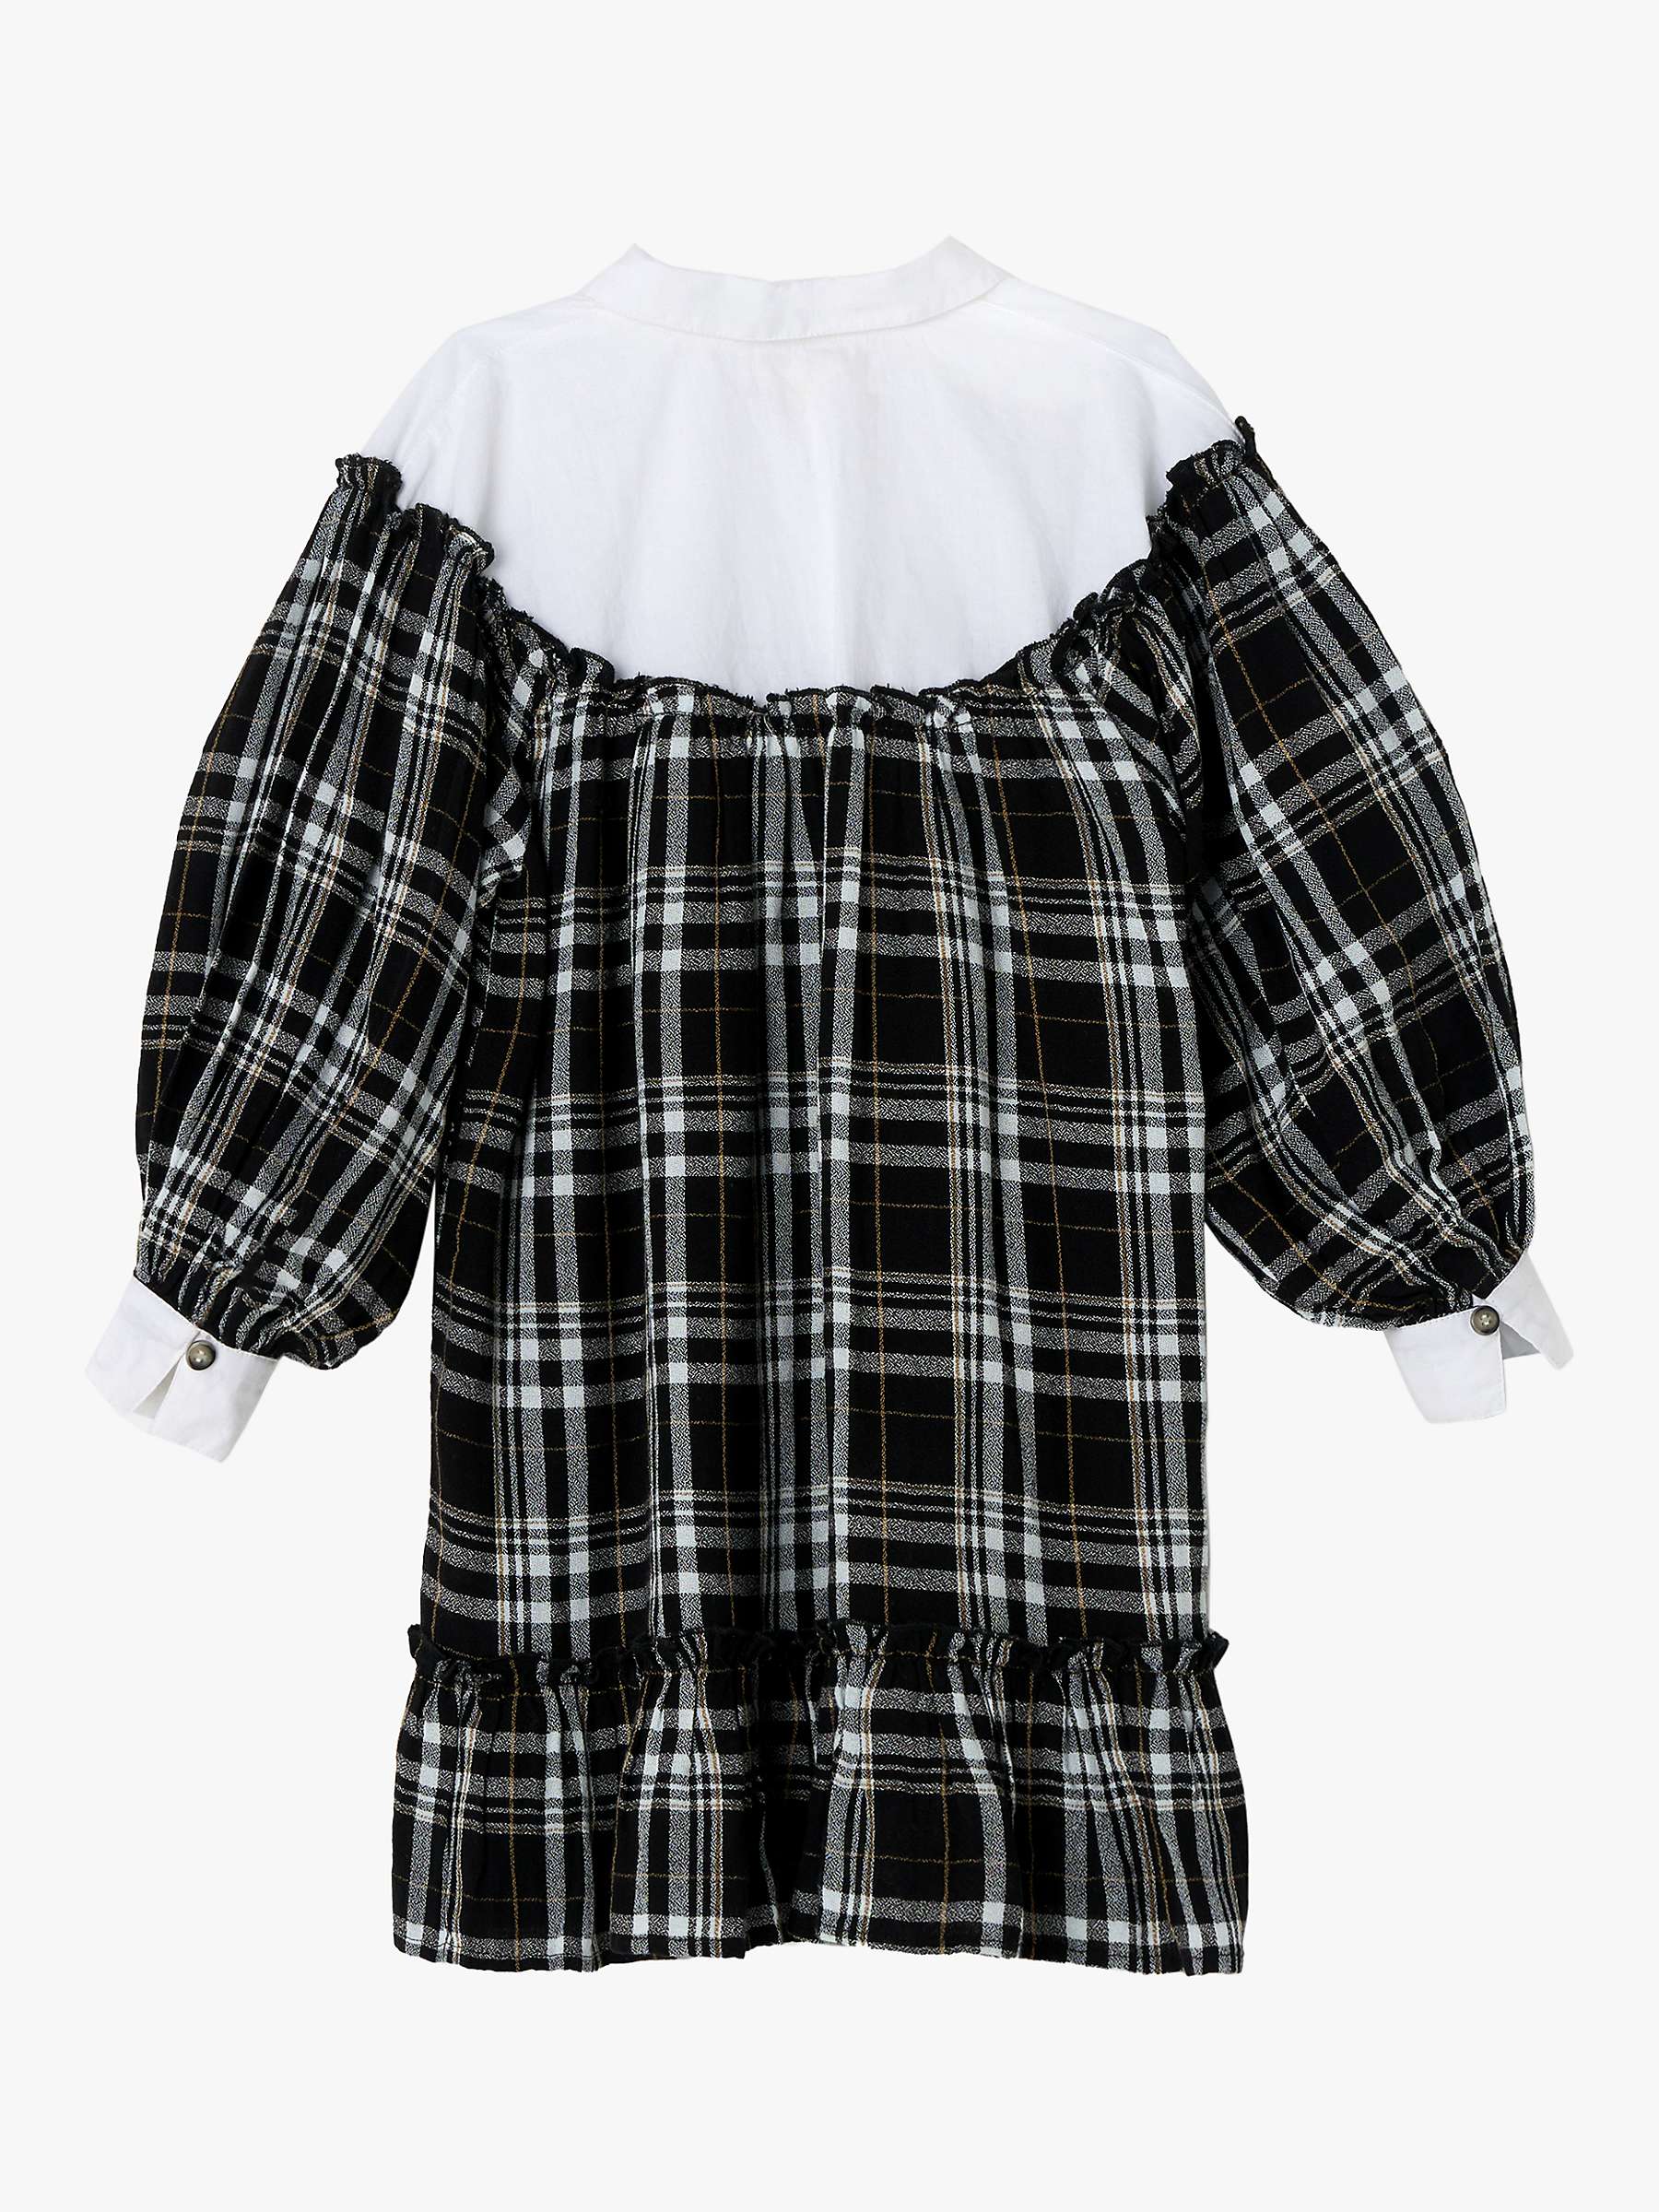 Buy Angel & Rocket Kids' Ashley Check Shirt Dress, Black Online at johnlewis.com